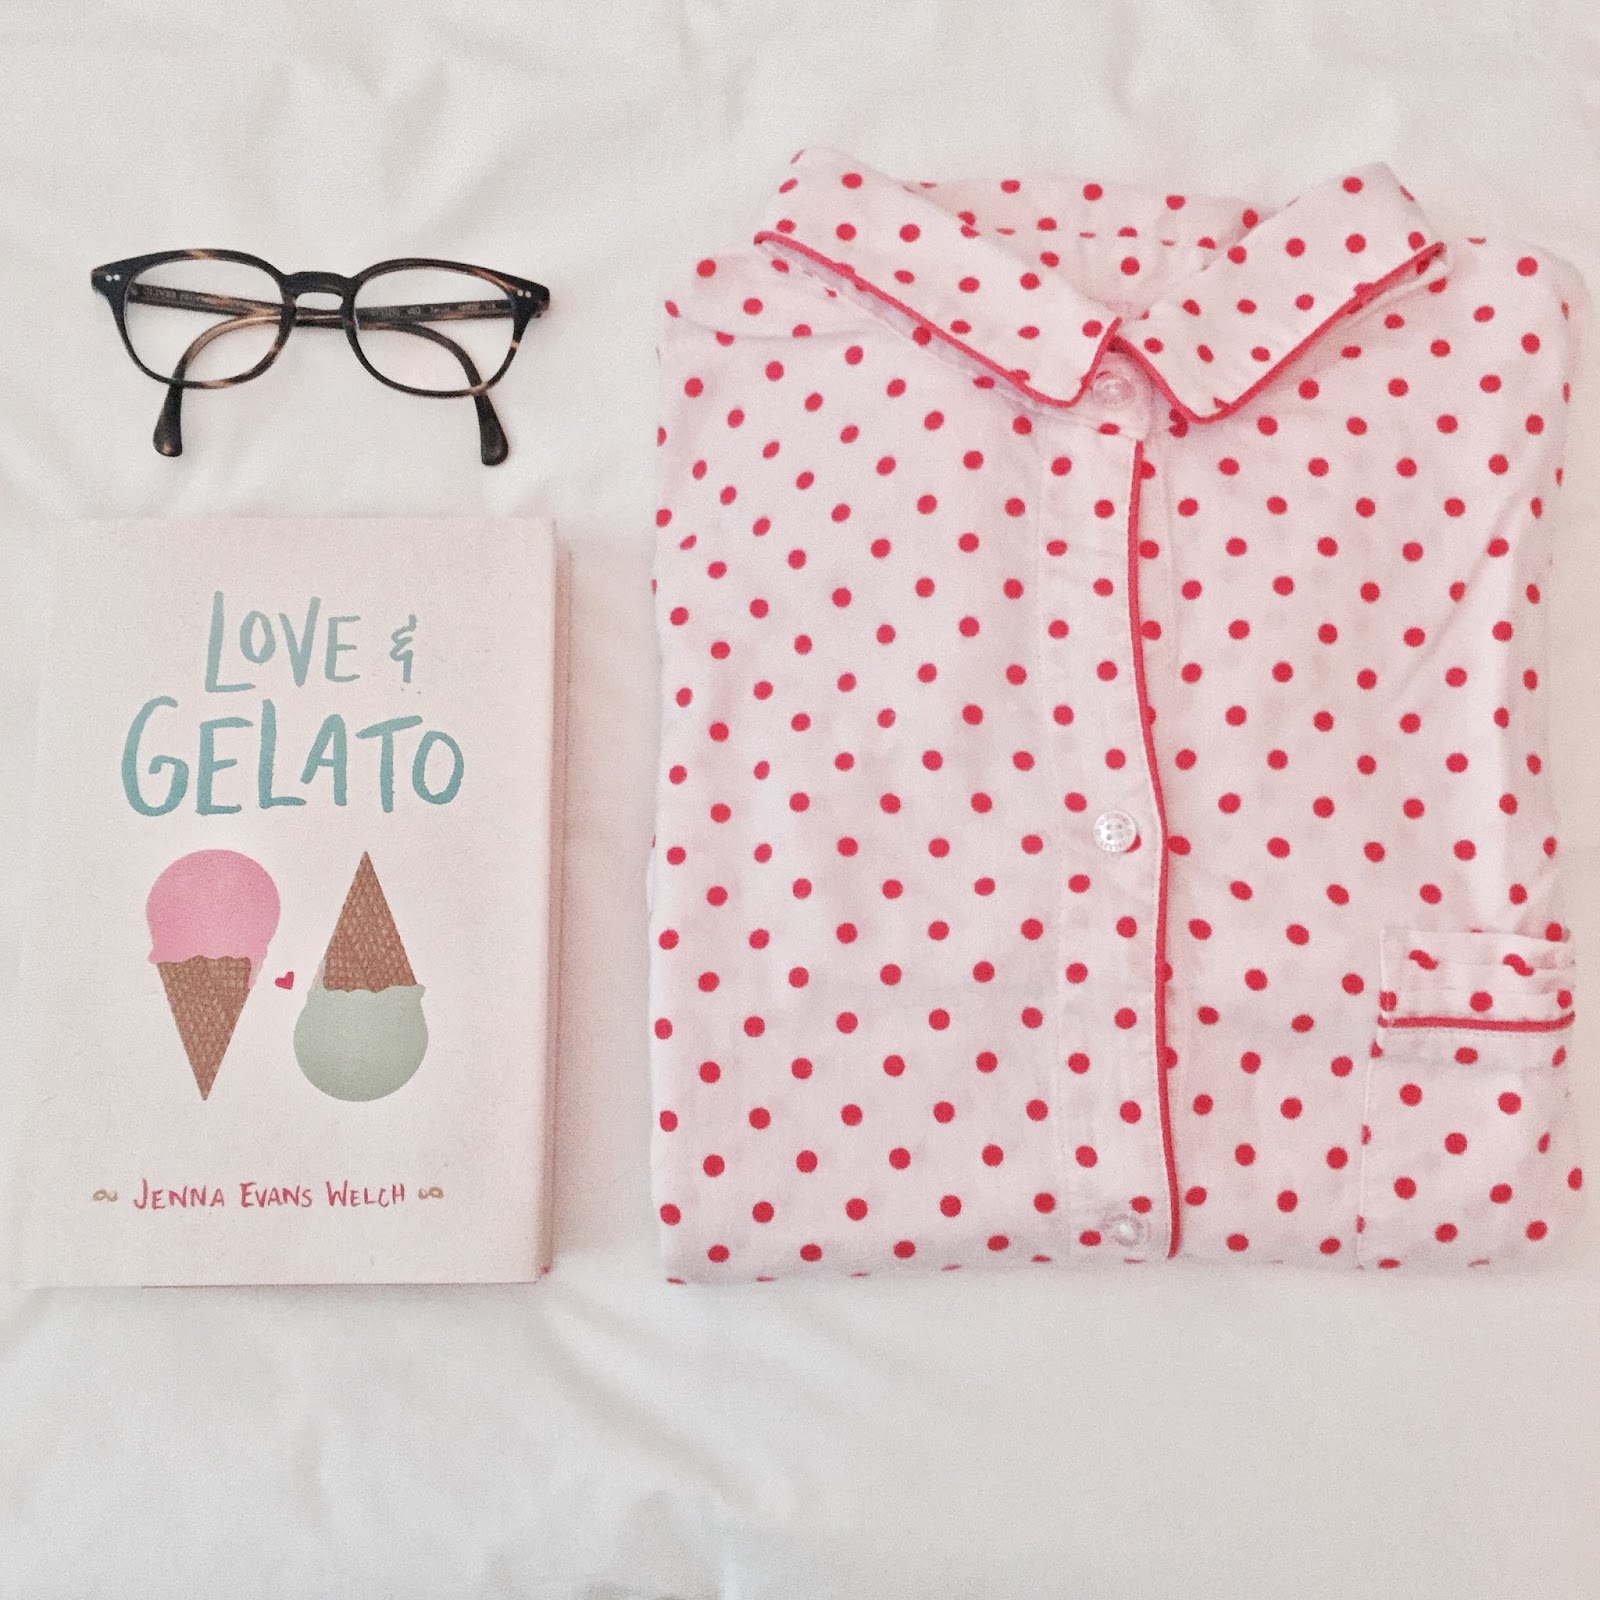 love and gelato book cover